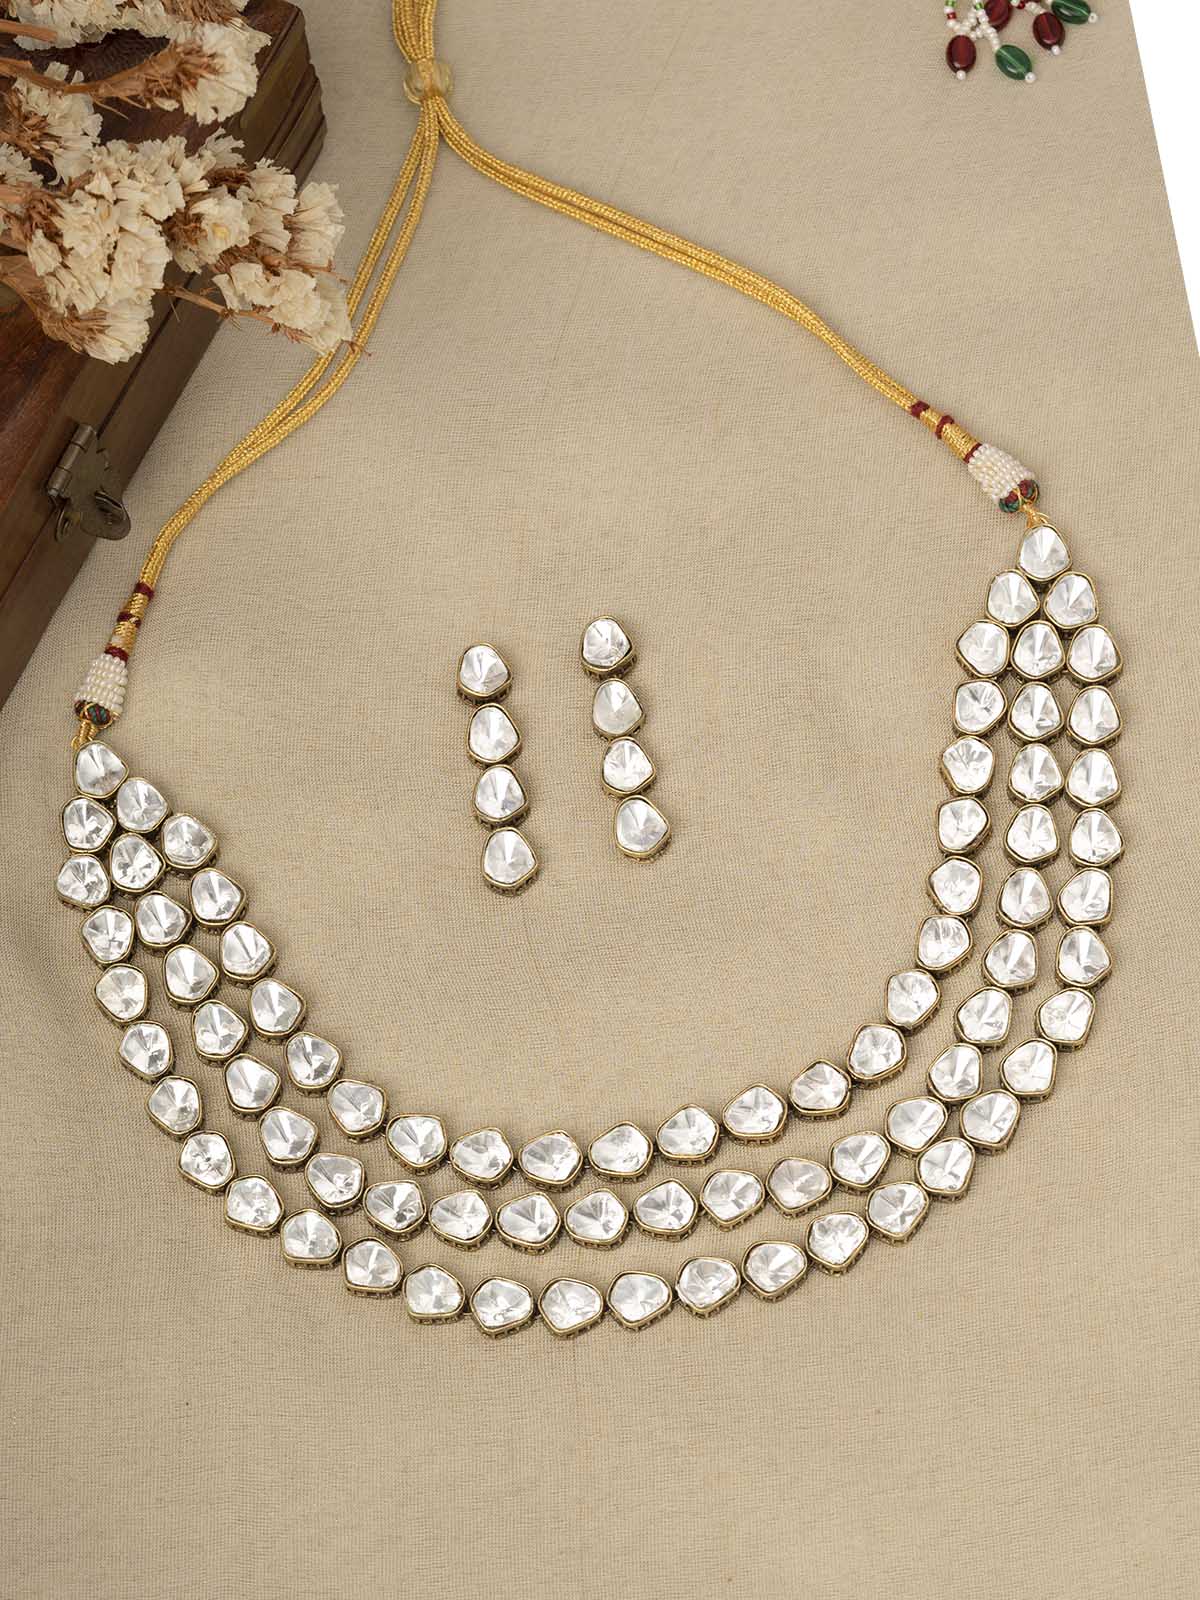 PK-S115 - White Color Faux Diamond Short Necklace Set